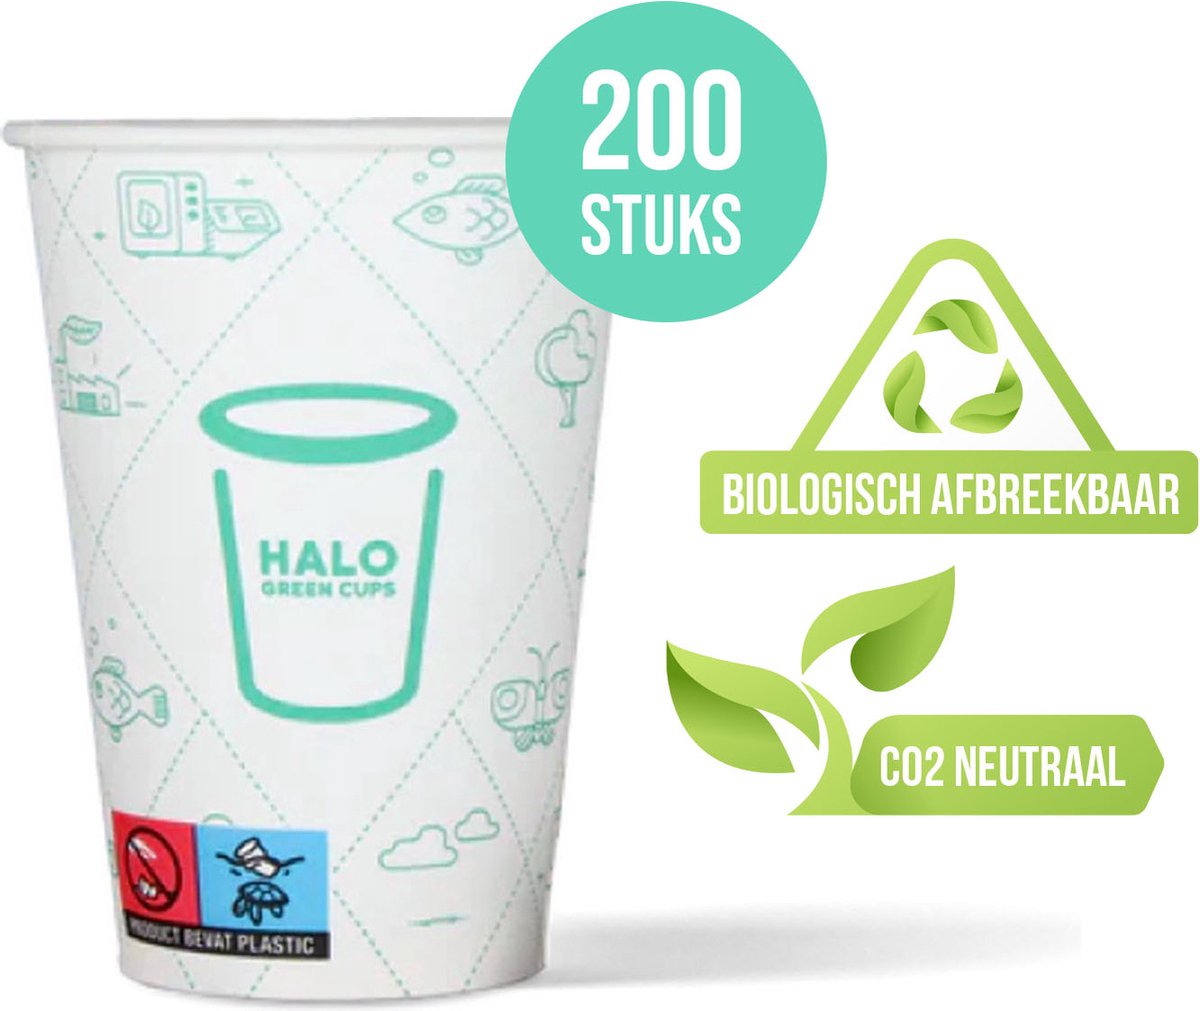 HALO Green Cups Koffiebekers - To Go Bekers - Wegwerp beker - Biologisch afbreekbaar - CO2 Neutraal - PLA/FSC - 180ml/7.5Z - 200 Stuks